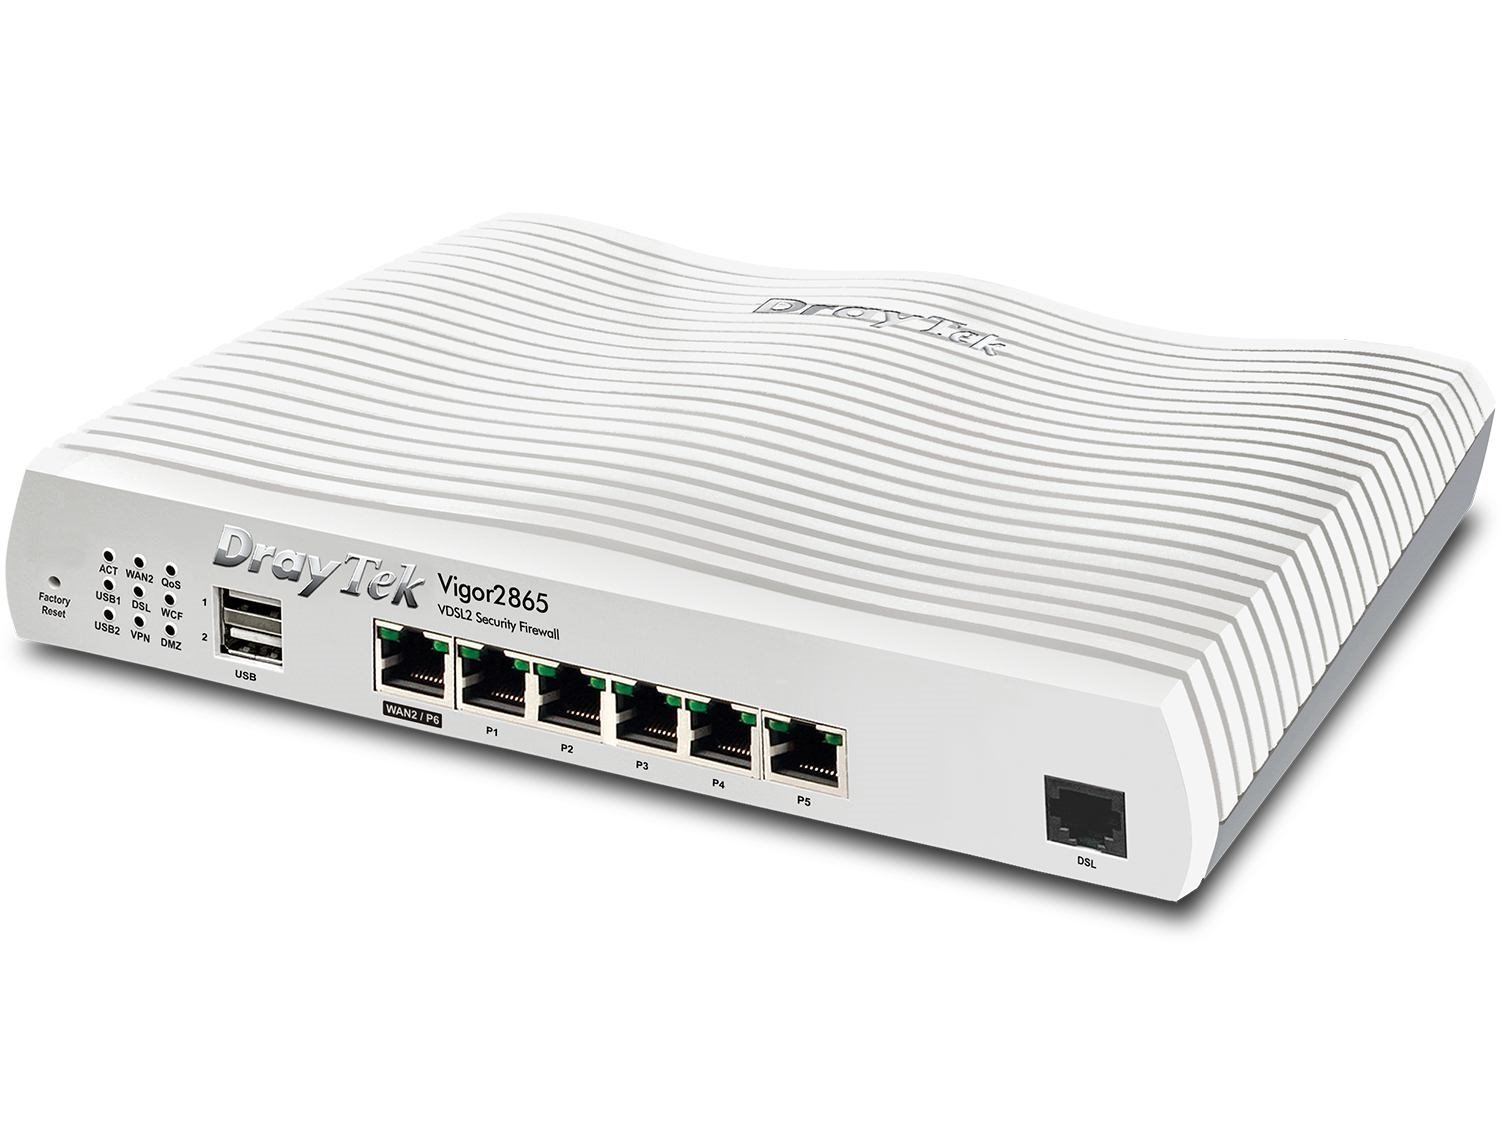 Draytek Vigor 2865 Wired Router Gigabit Ethernet Grey White (Draytek Vigor 2865 VDSL & Eth Wired Rout)